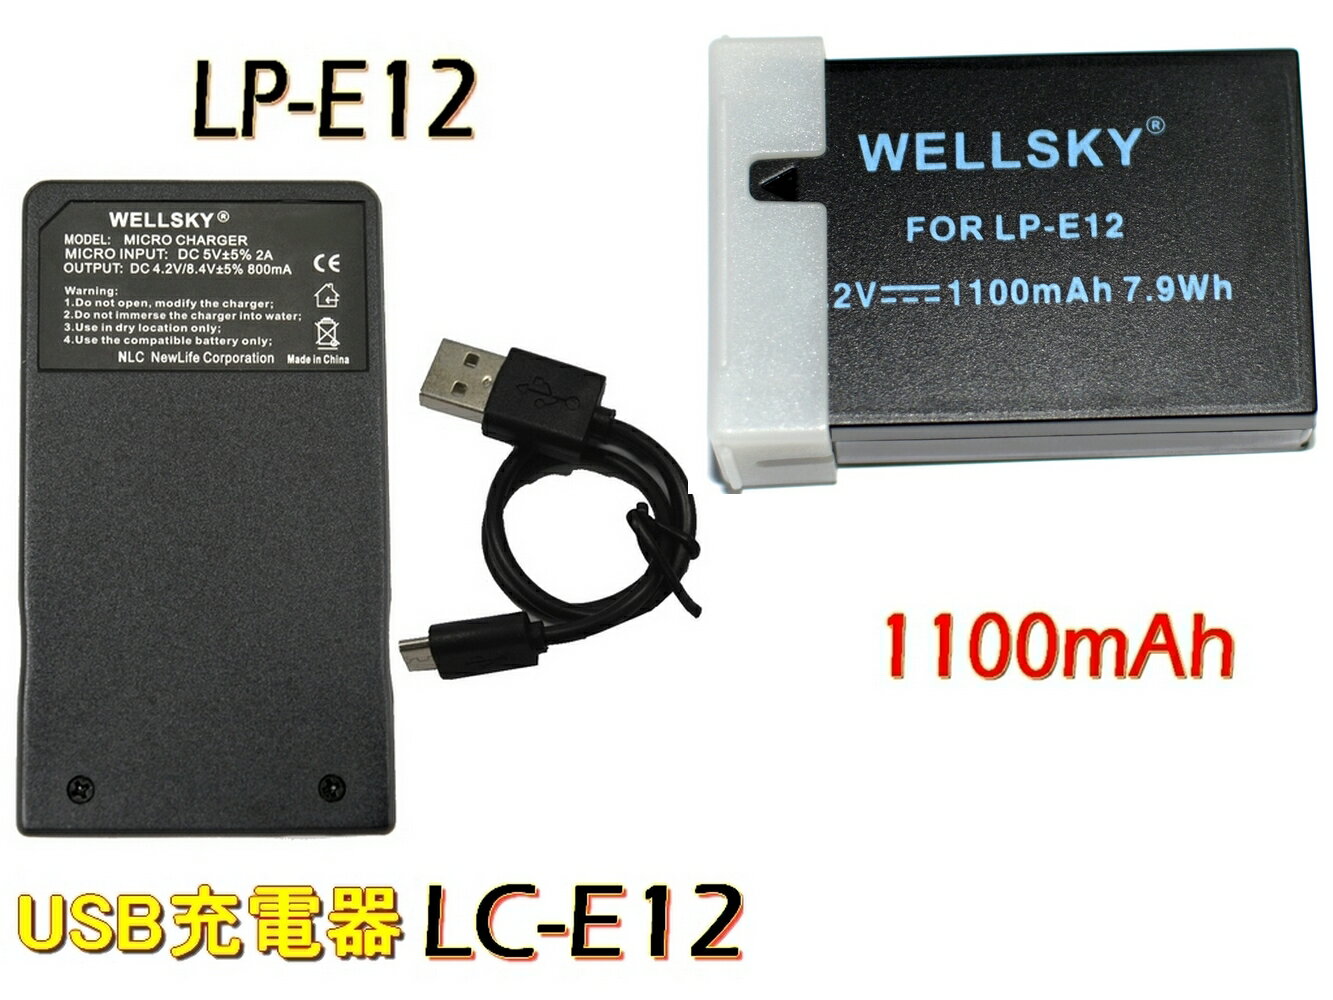 LP-E12 互換バッテリー 1100mAh 1個 LC-E12 超軽量 USB Type C 急速 互換充電器 バッテリーチャージャー 1個 2点セット 純正品と同じよう使用可能 Canon キヤノン イオス EOS Kiss X7 / EOS M / EOS M2 / EOS M100 / EOS Kiss M